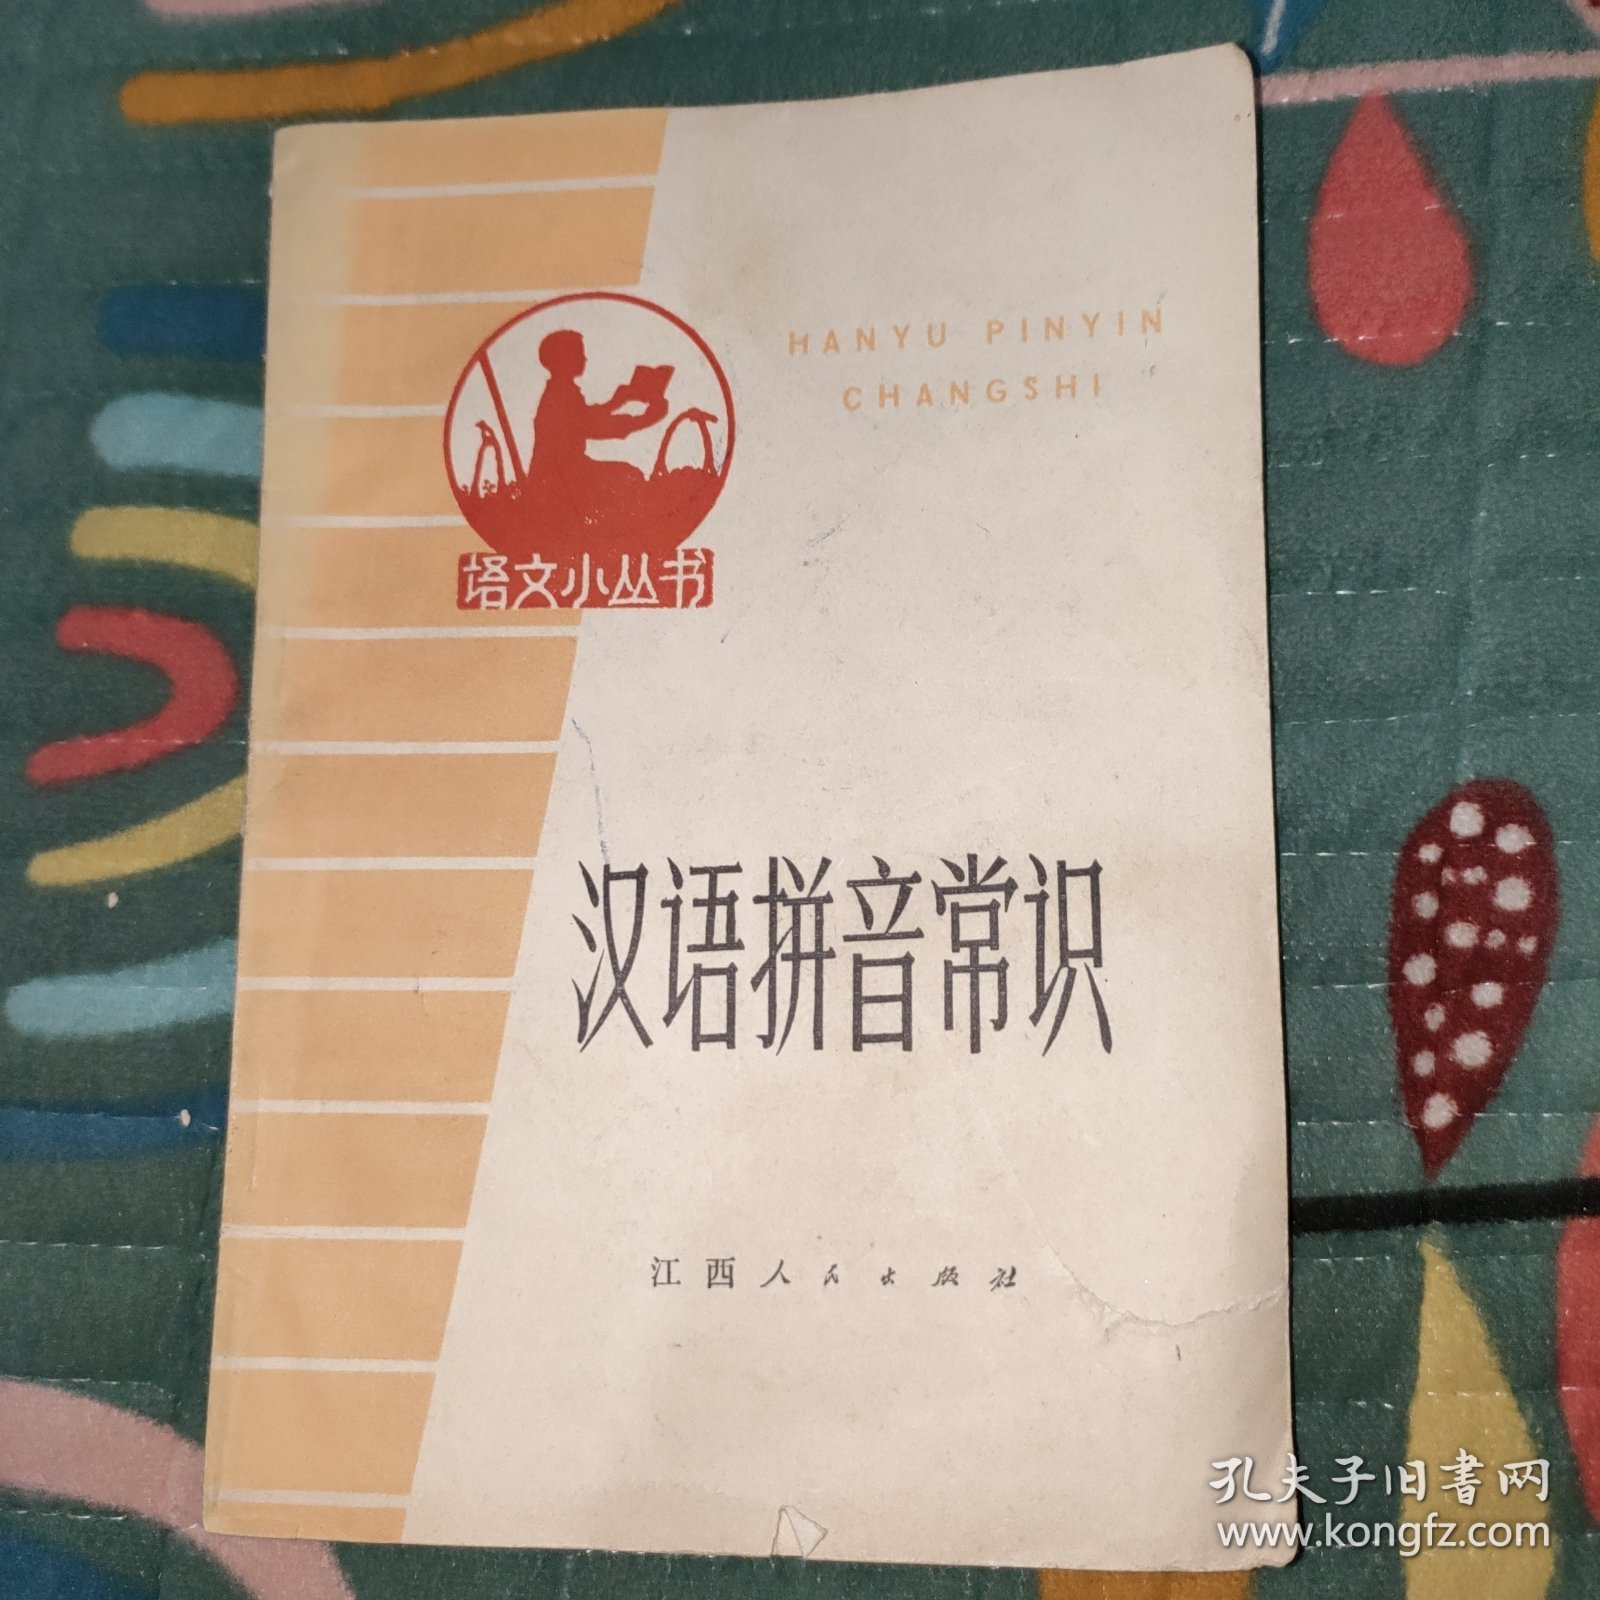 语文小丛书 汉语拼音常识